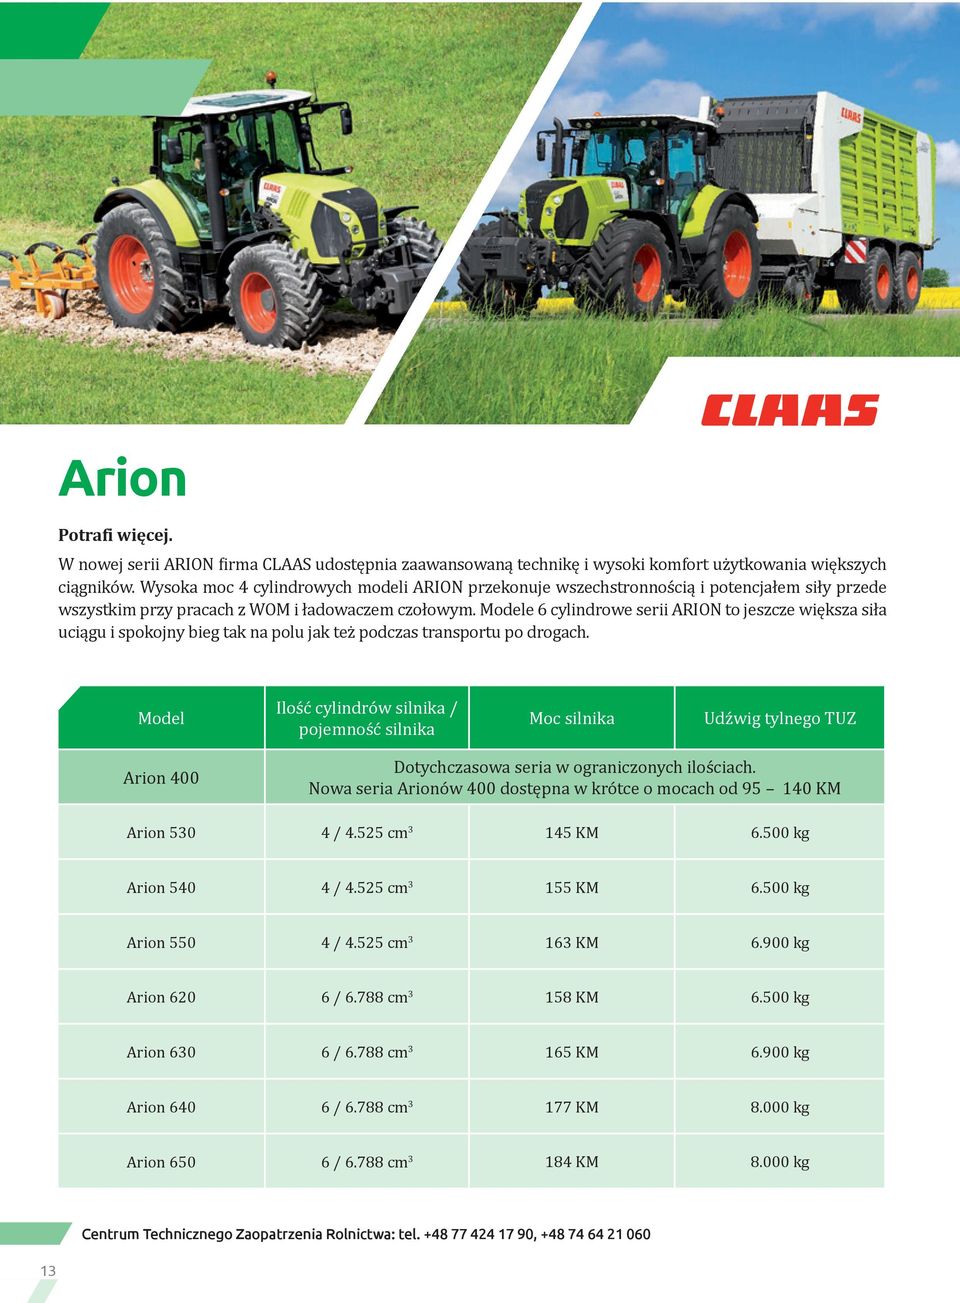 Modele 6 cylindrowe serii ARION to jeszcze większa siła uciągu i spokojny bieg tak na polu jak też podczas transportu po drogach.